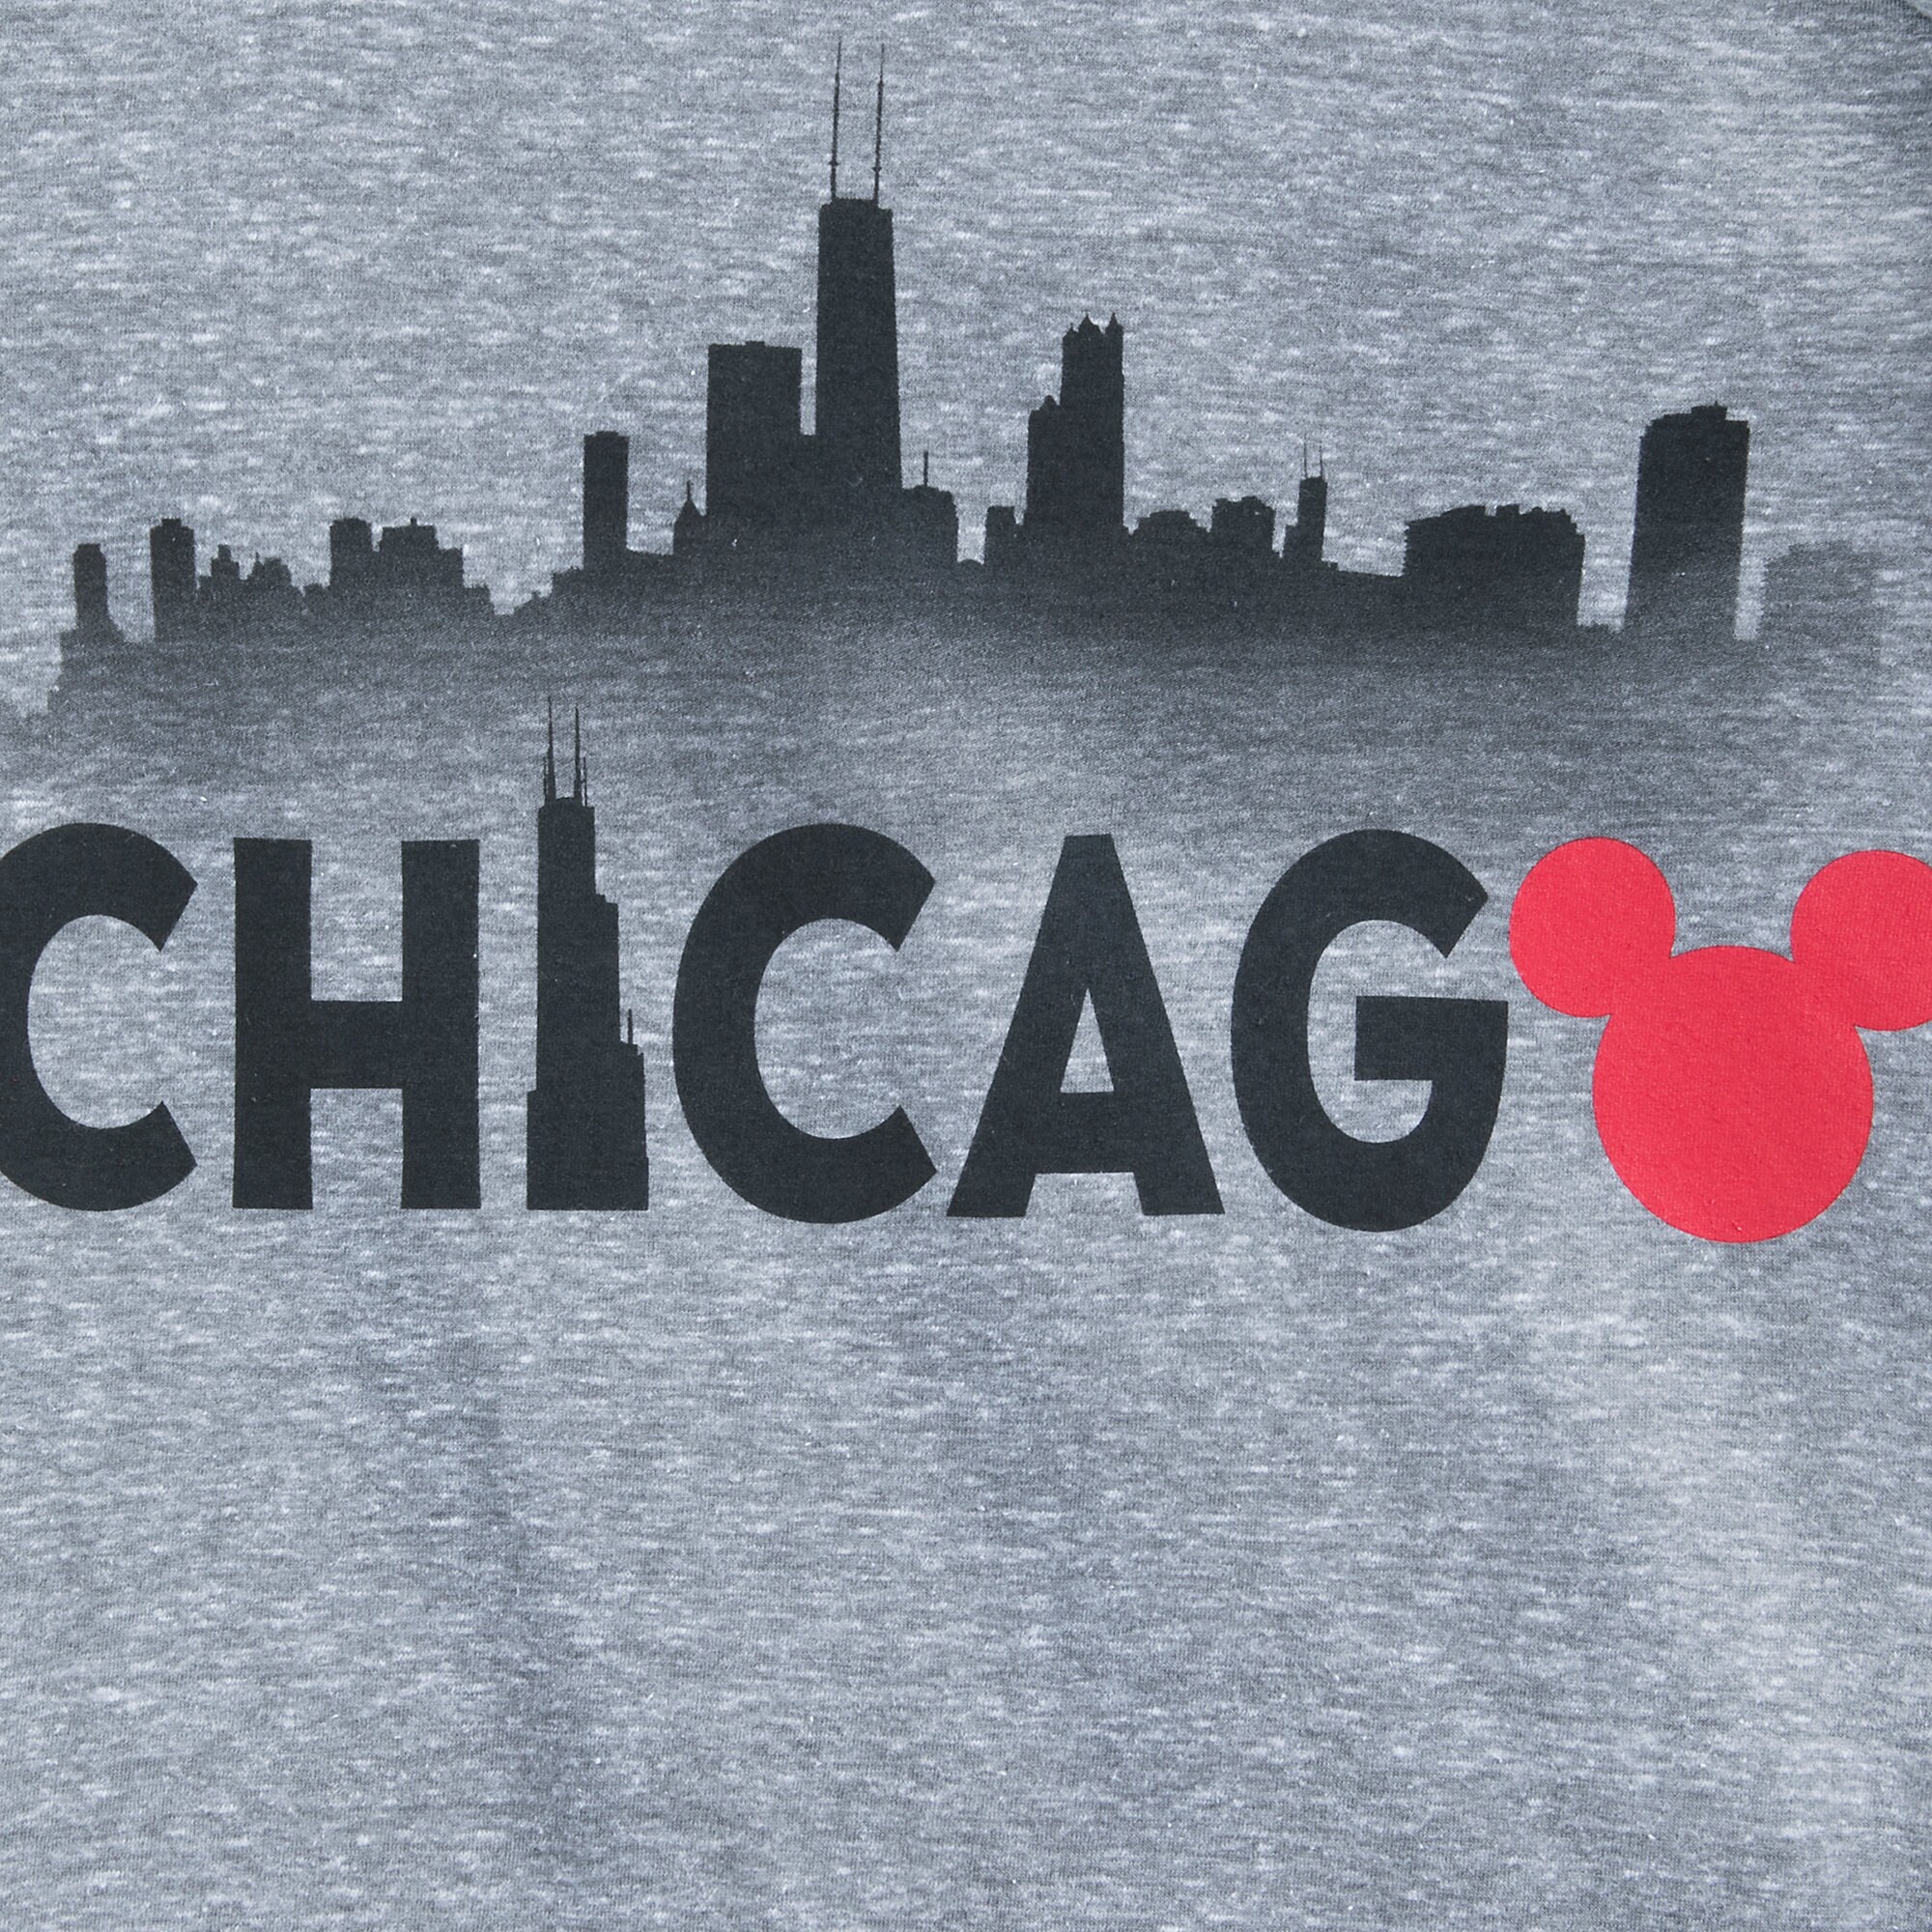 Mickey Mouse Chicago Ringer T-Shirt Shirt for Men